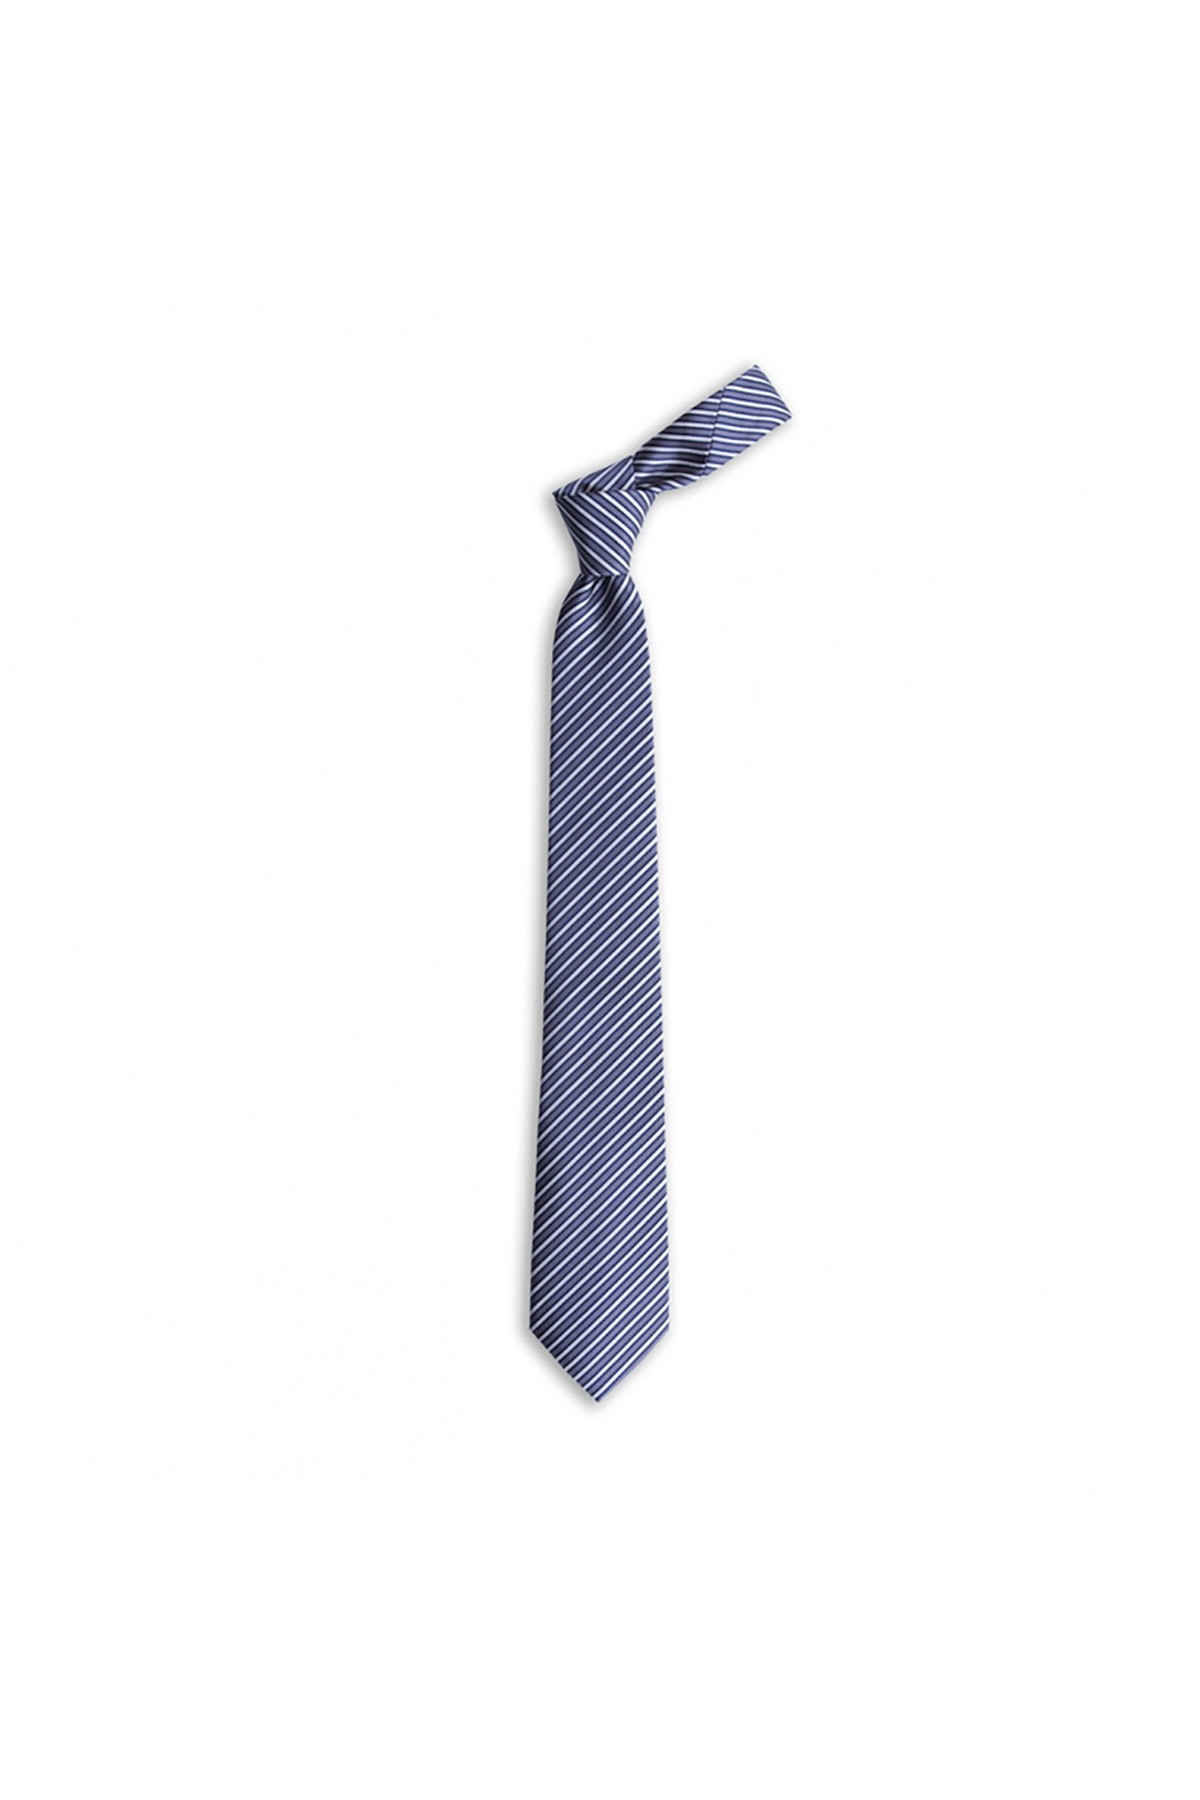 Çok çizgili 7,5 cm genişliğinde klasik ipek kravat - Gri